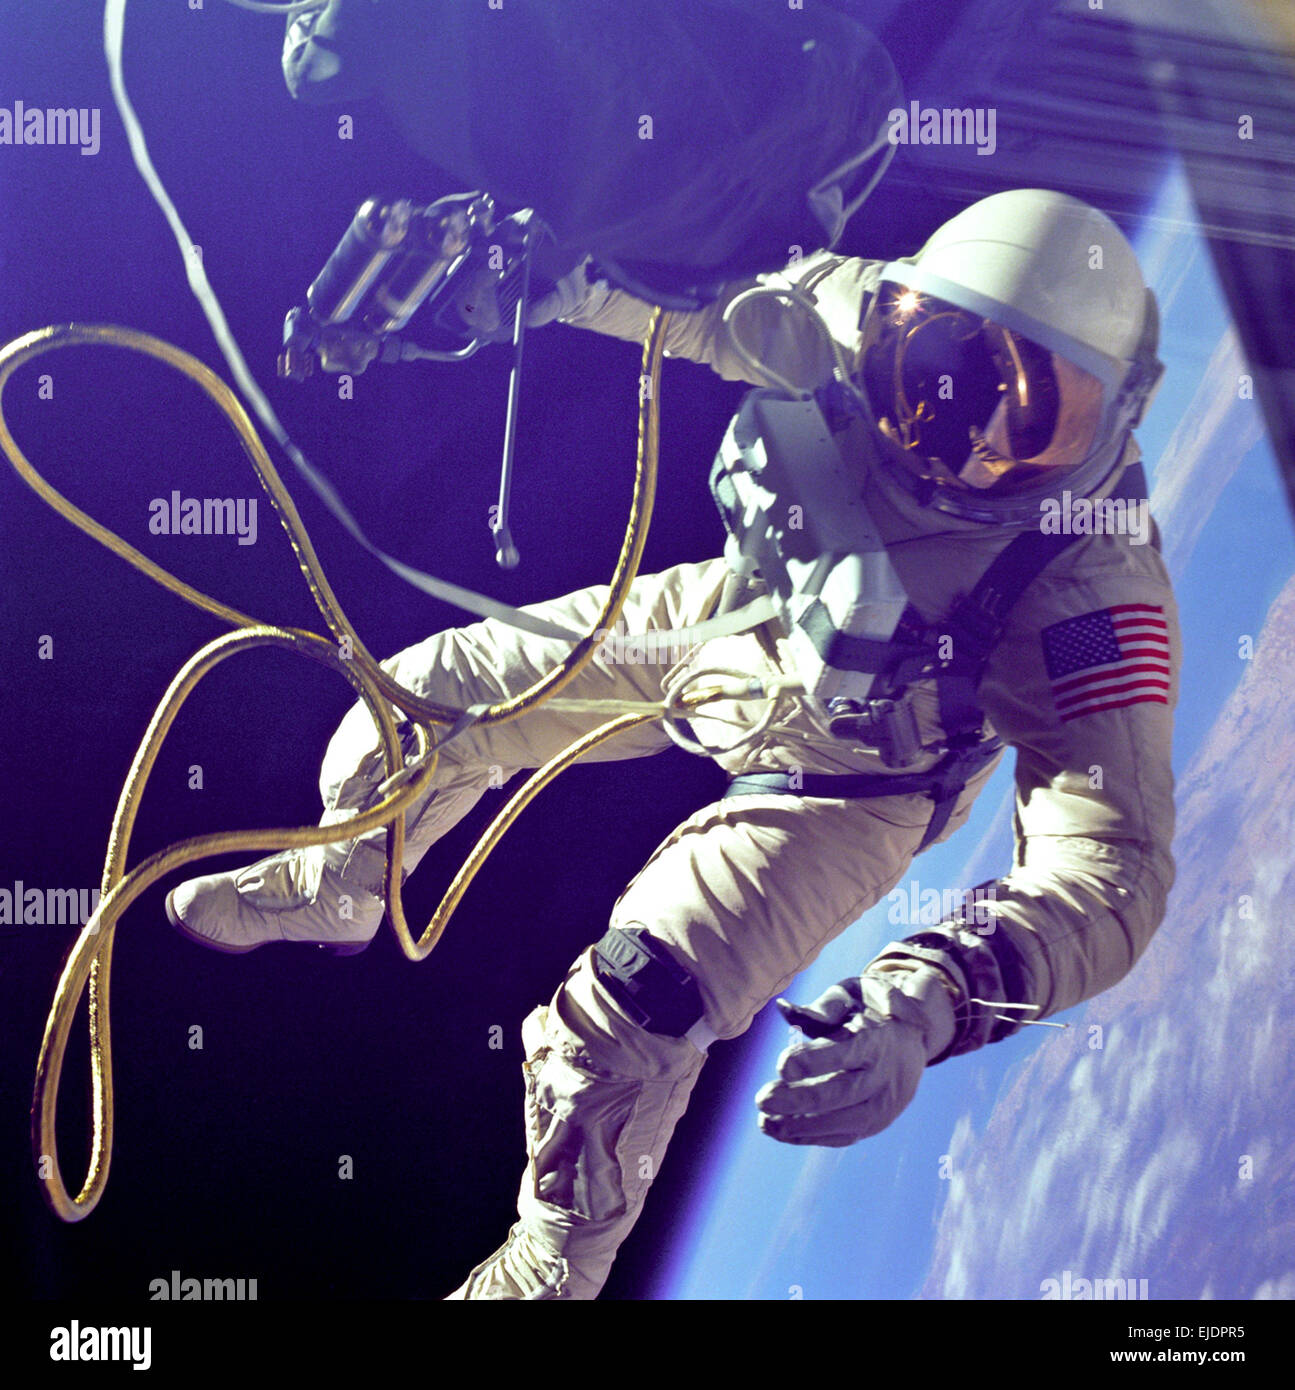 Ed Weiß, ersten amerikanischen Weltraumspaziergang. Edward H. Weiß II. wurde der erste amerikanische außerhalb seines Raumschiffs auf Schritt und gehen lassen, effektiv Einstellung sich selbst hilflos in der Schwerelosigkeit des Weltraums. Für 23 Minuten Weiß schwebte und manövriert sich rund um das Gemini spacecraft, der bei der Anmeldung 6.500 Meilen während seiner Orbitalen schlendern. Weiß wurde die Sonde von einem 25 Fuß Nabelschnur Netz angeschlossen sind, und einem 23 Fuß Halteband Linie, sowohl in Gold Band wickelte ein Kabel zu bilden. In seiner rechten Hand, Weiß trägt eine Hand hielt selbst Manövrieren Einheit, die verwendet wird, um die Schwerelosigkeit zu bewegen Stockfoto